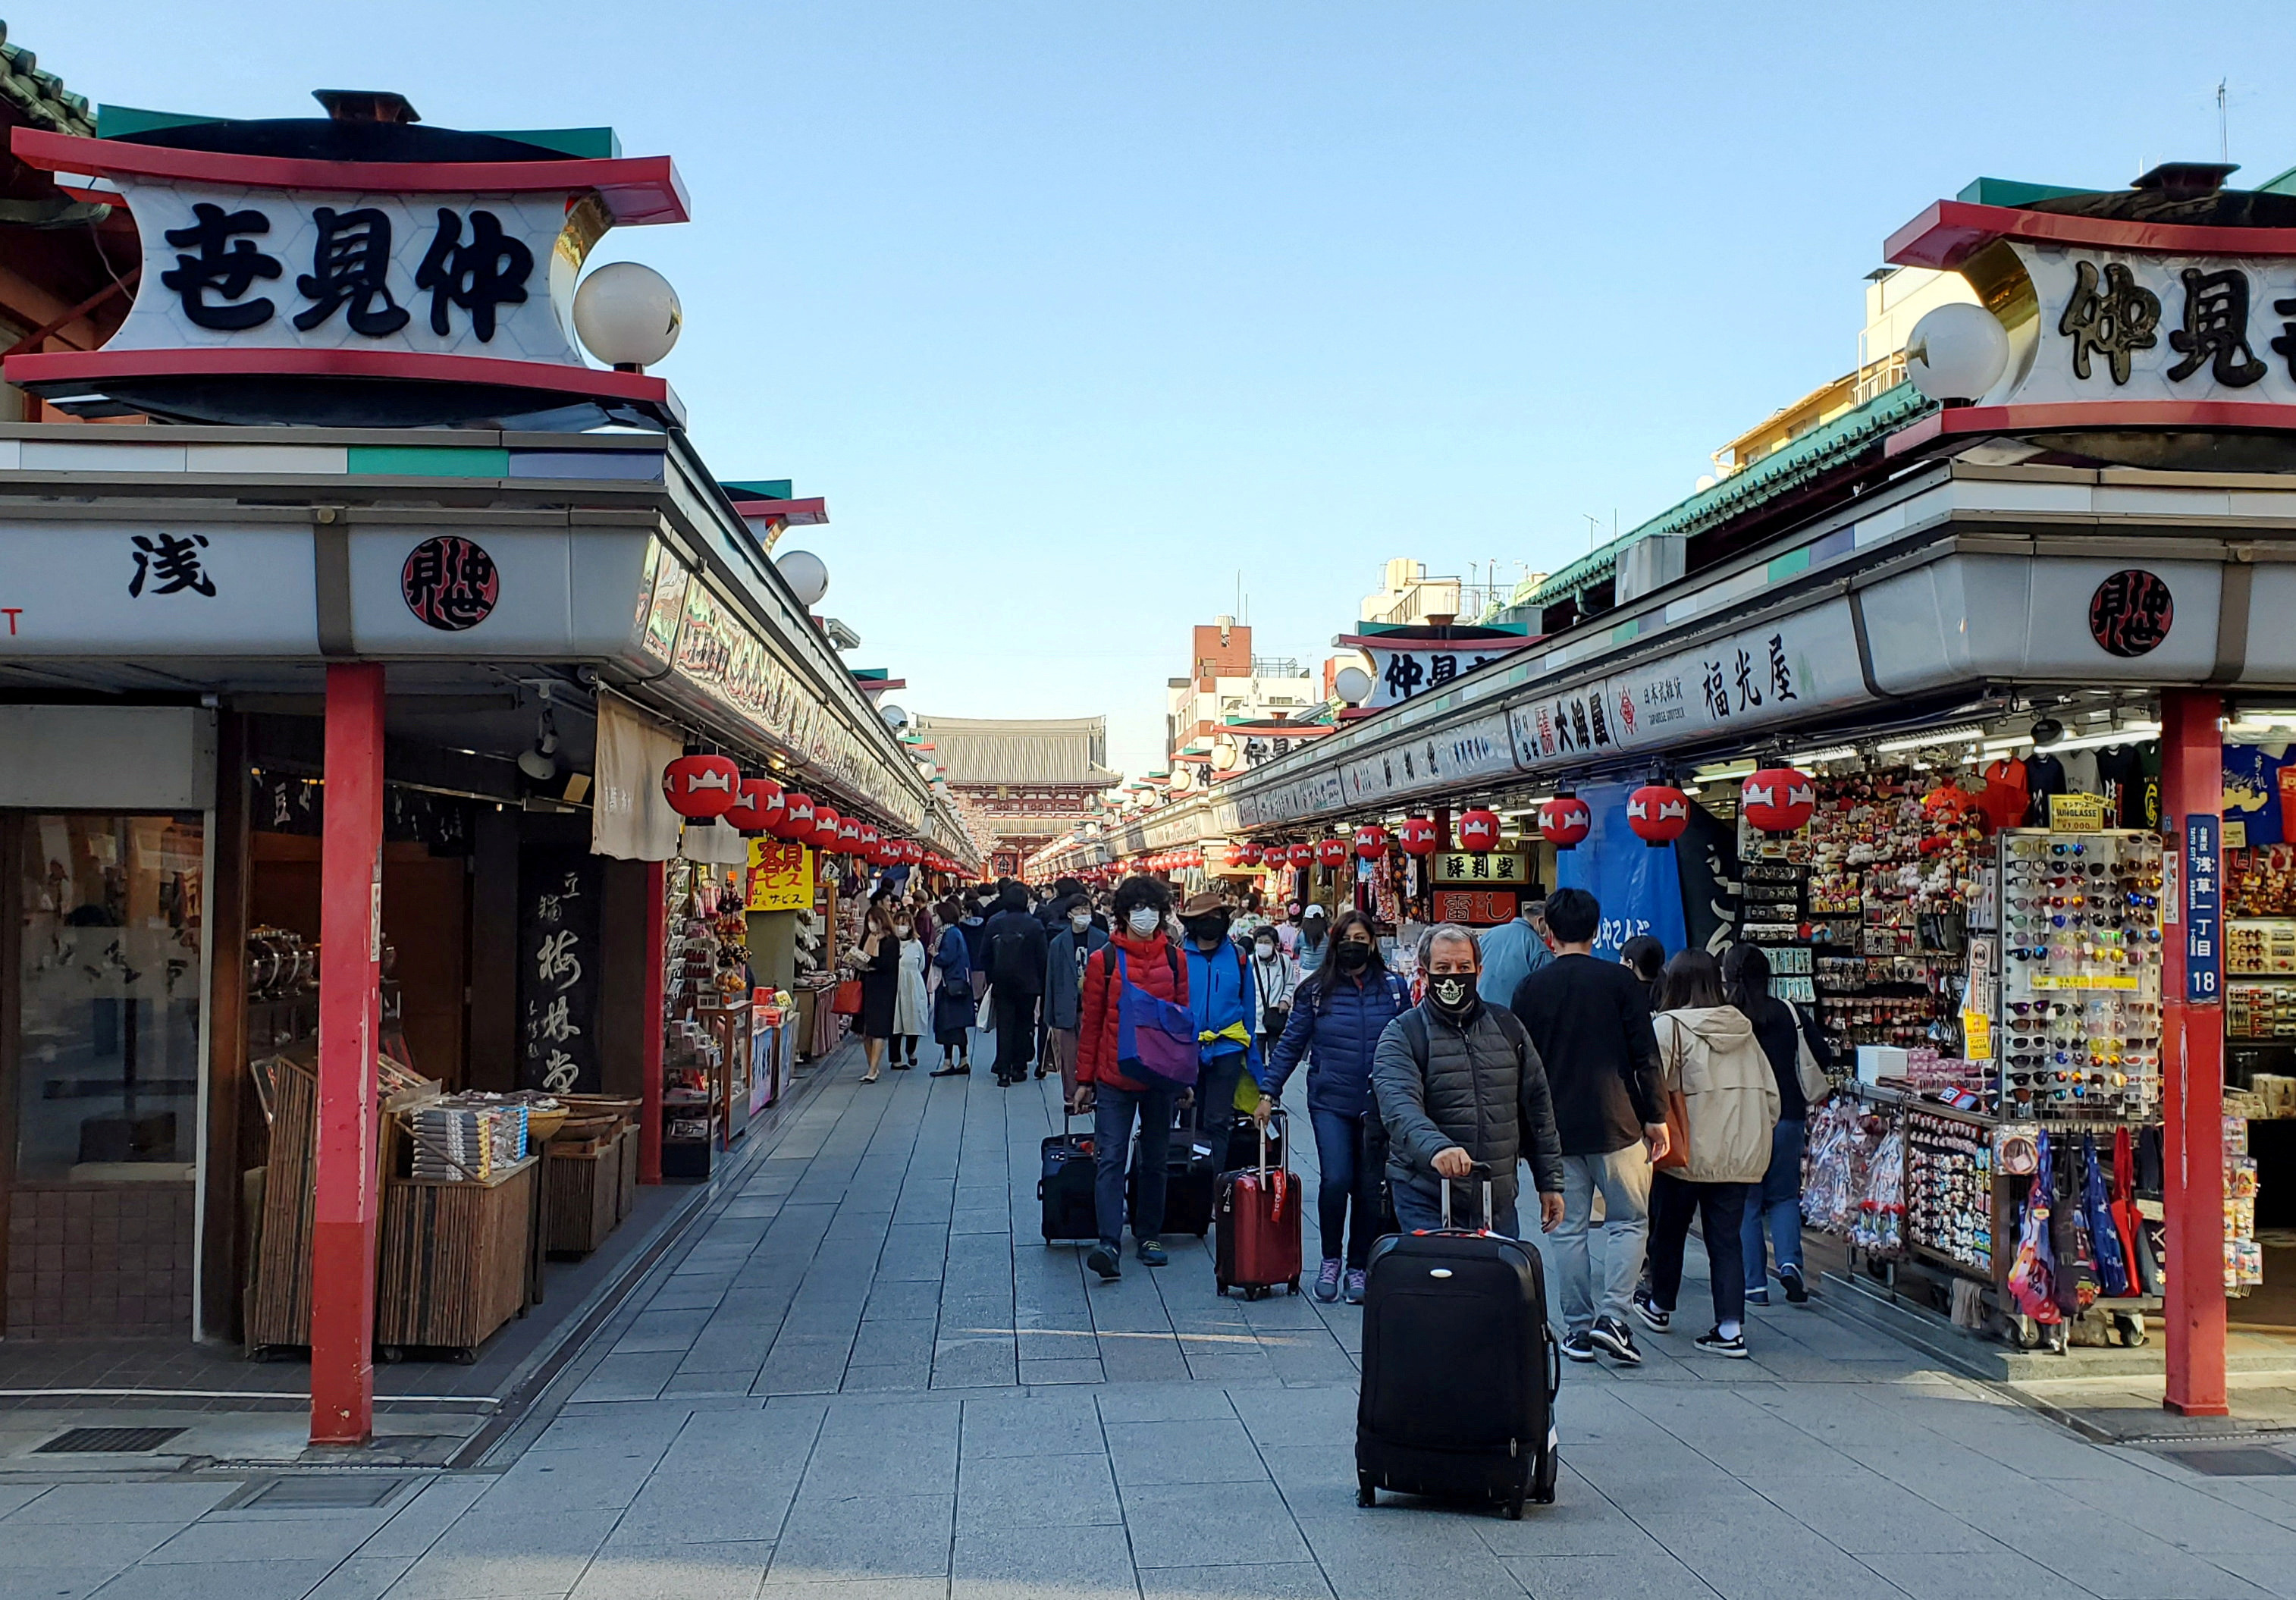 Japan Travel & Tourism Market Size